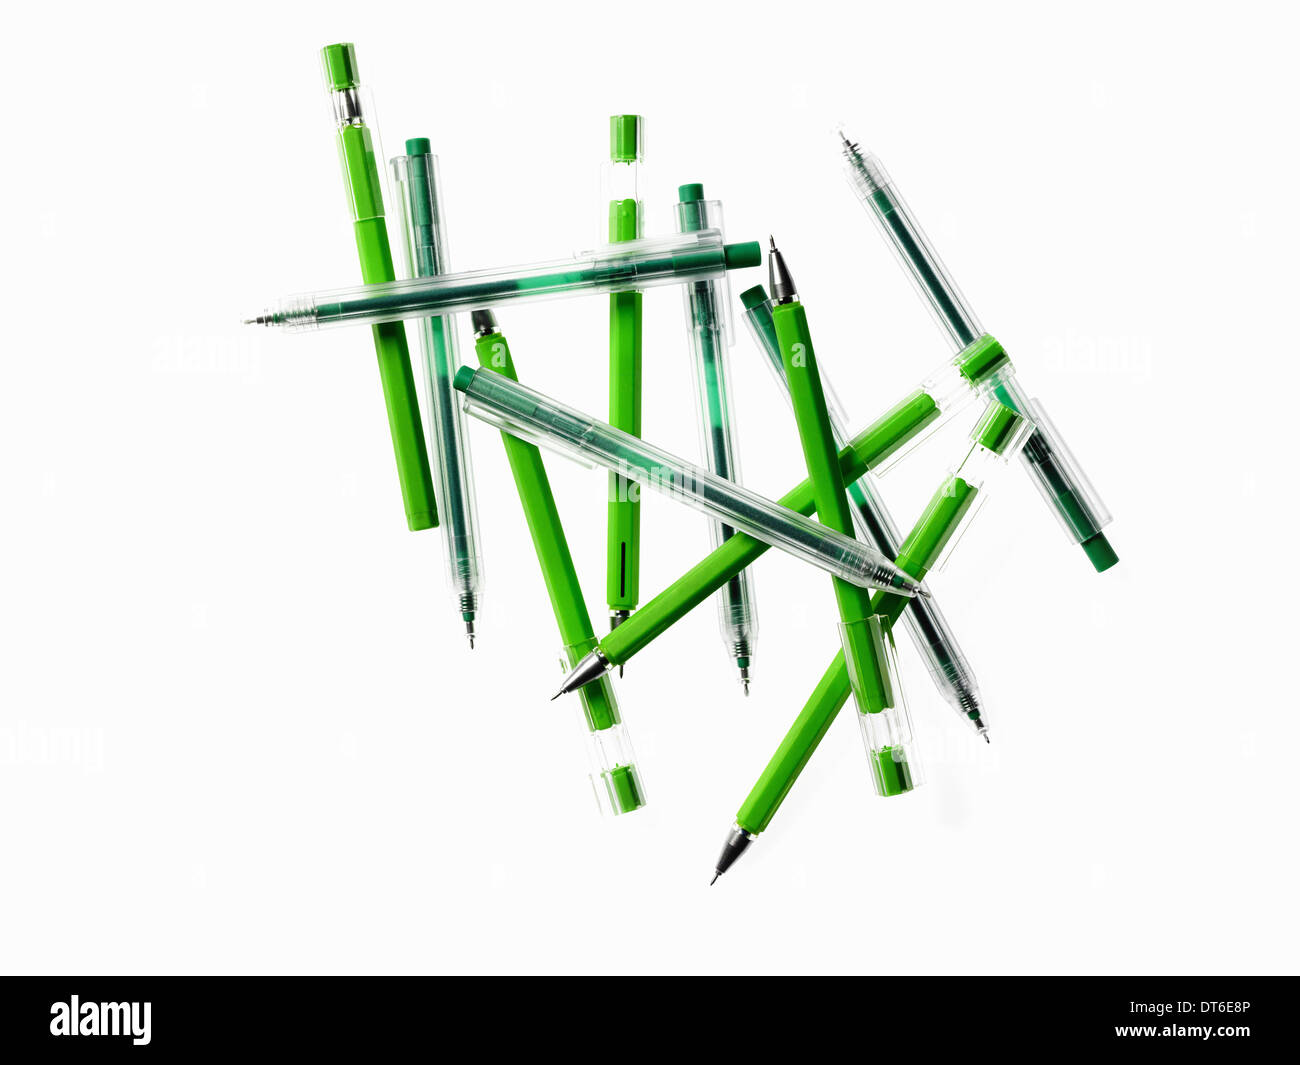 Grüne Büromöbel und Bürobedarf. Eine Gruppe von Stiften, Farben blau und grün. Stockfoto